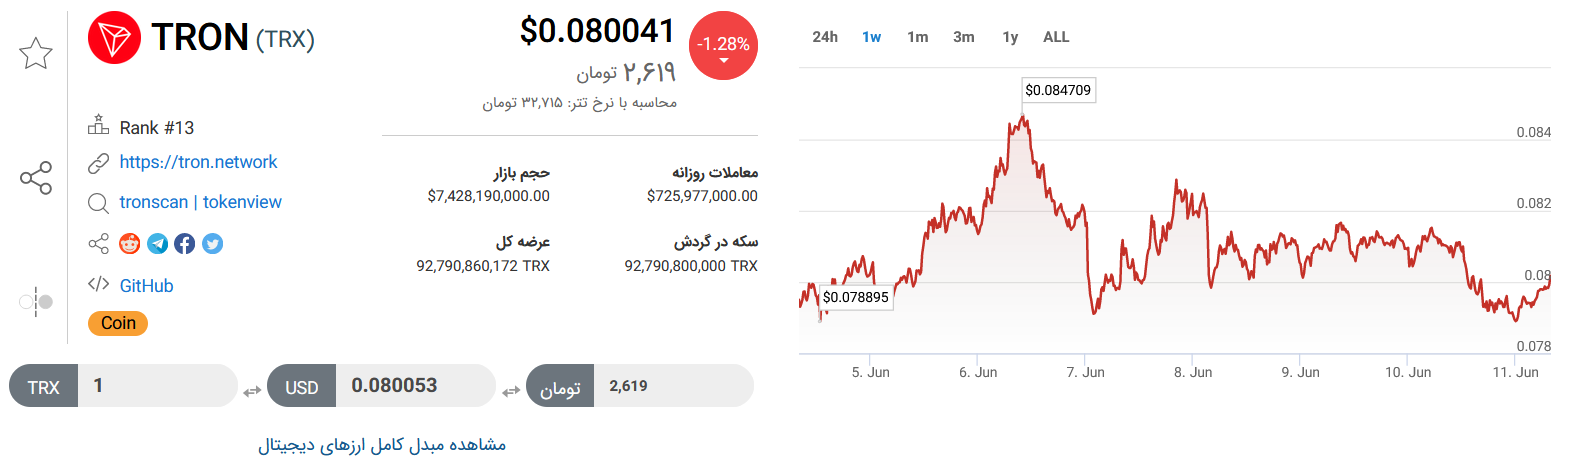 تحلیل تکنیکال رمزارز ترون امروز ۲۱ خرداد + نمودار و قیمت TRON